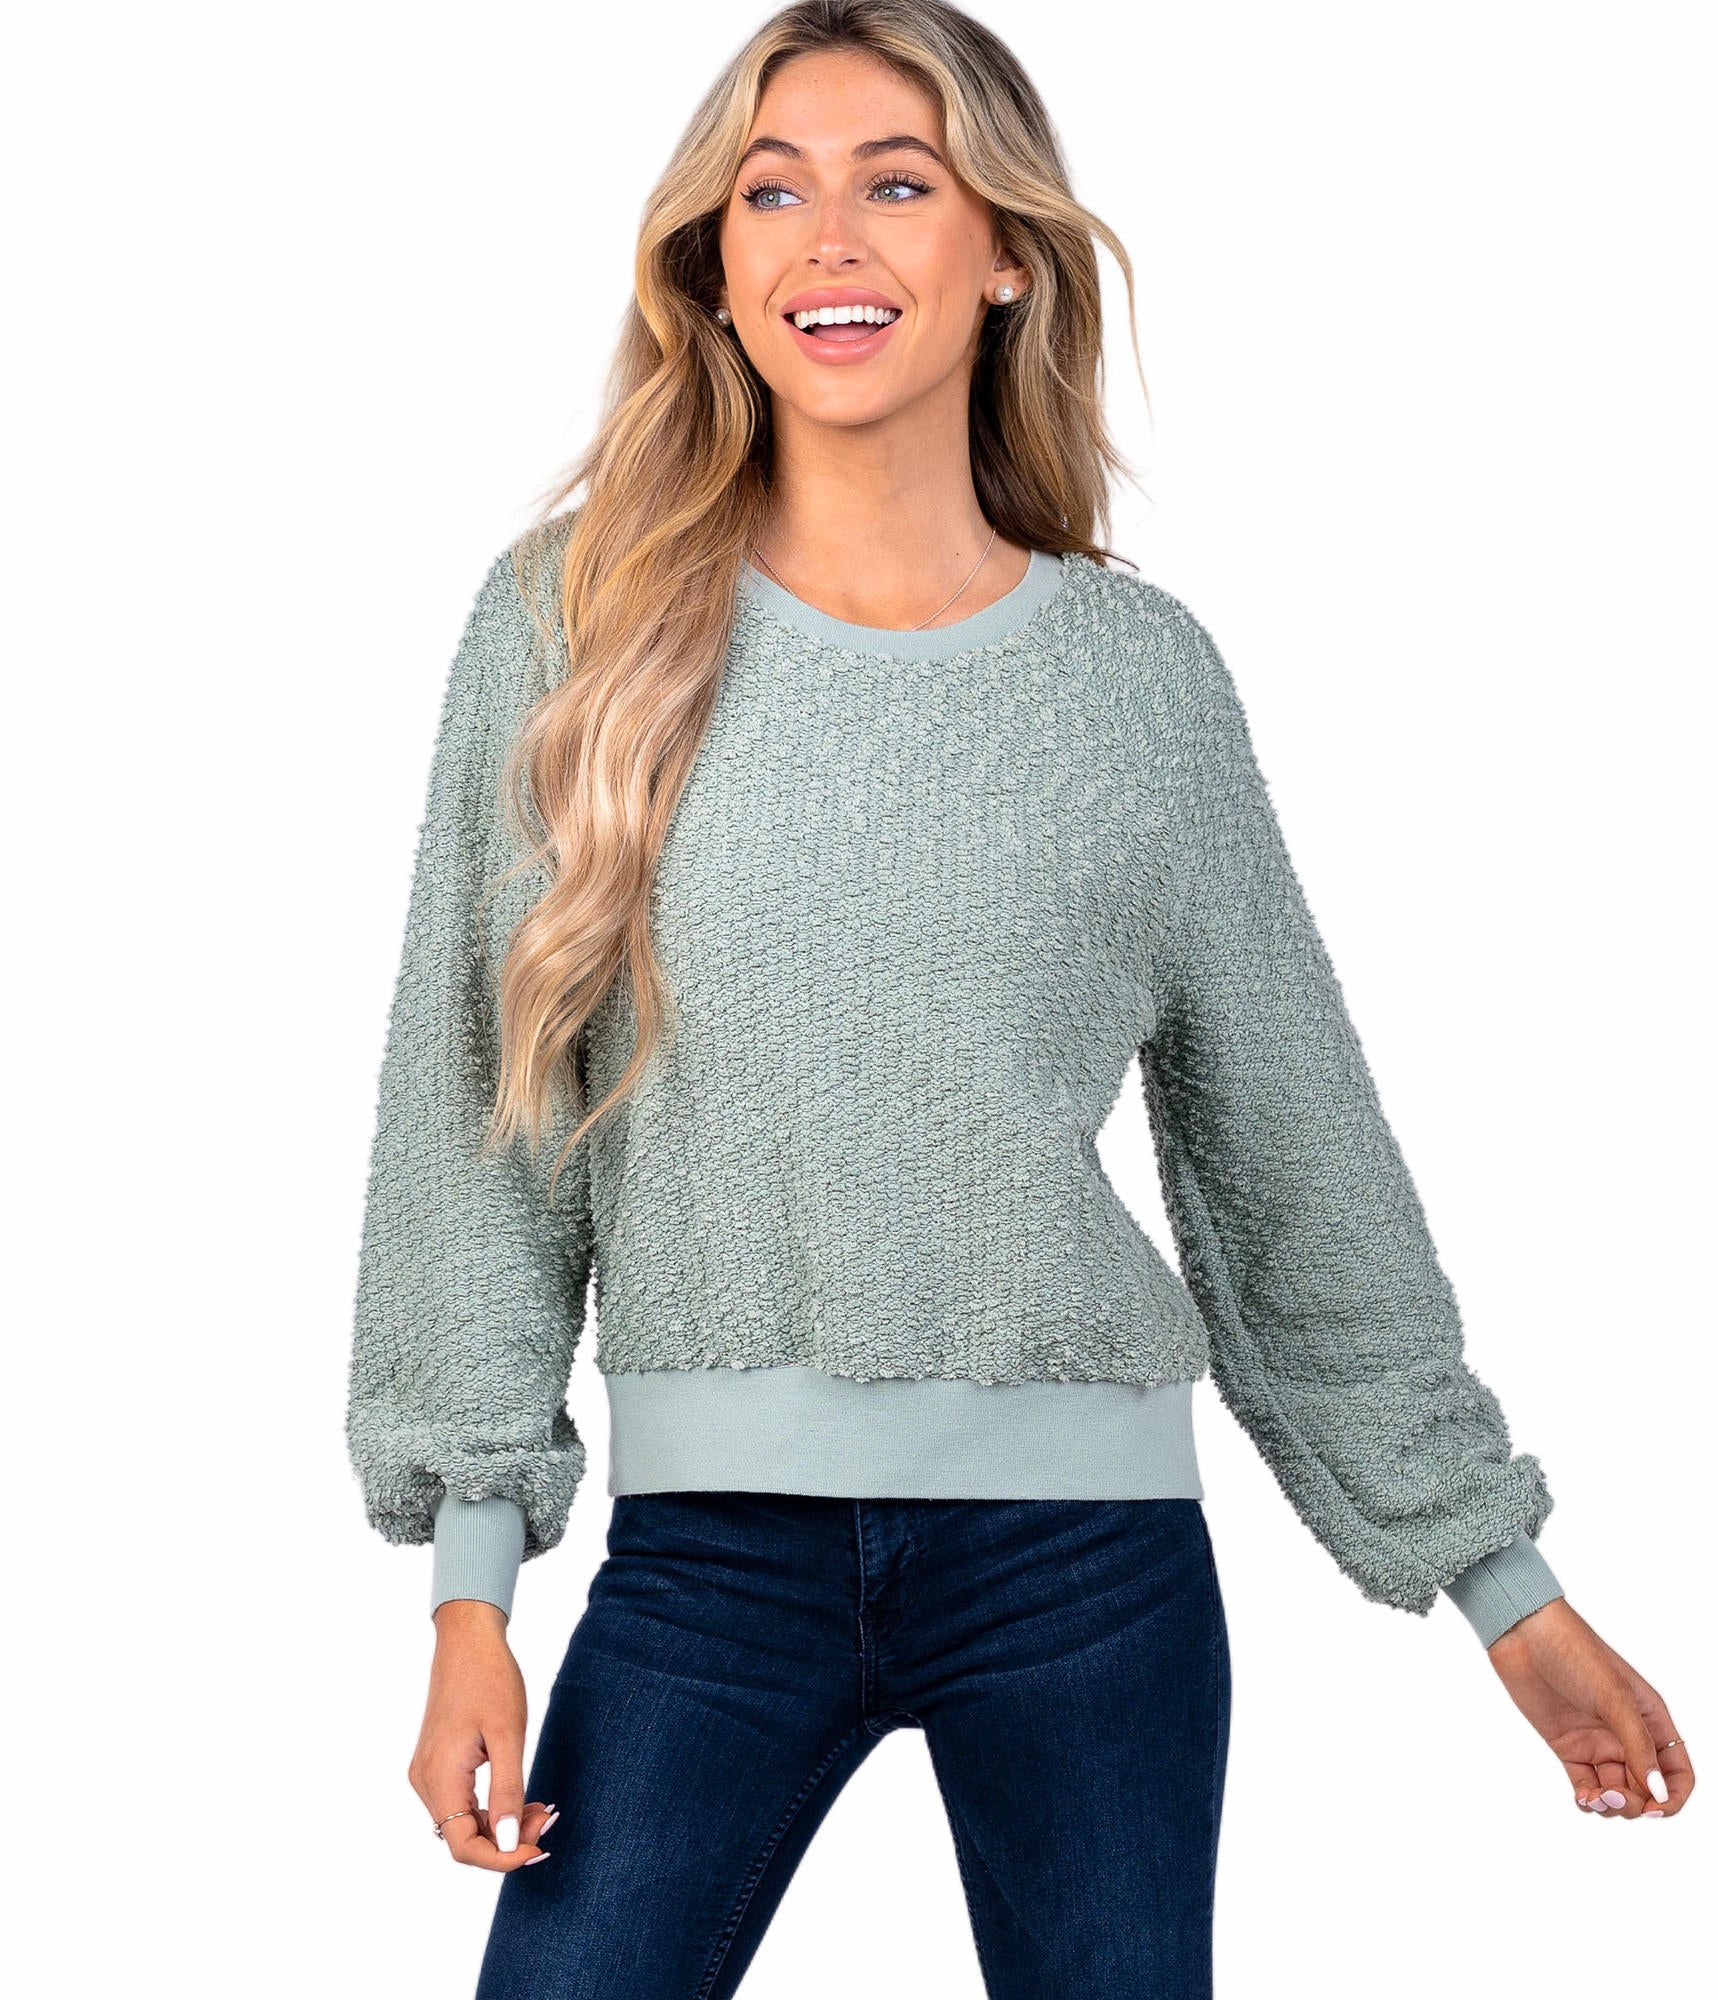 SSCO Bonfire Sweater - Aqua Gray